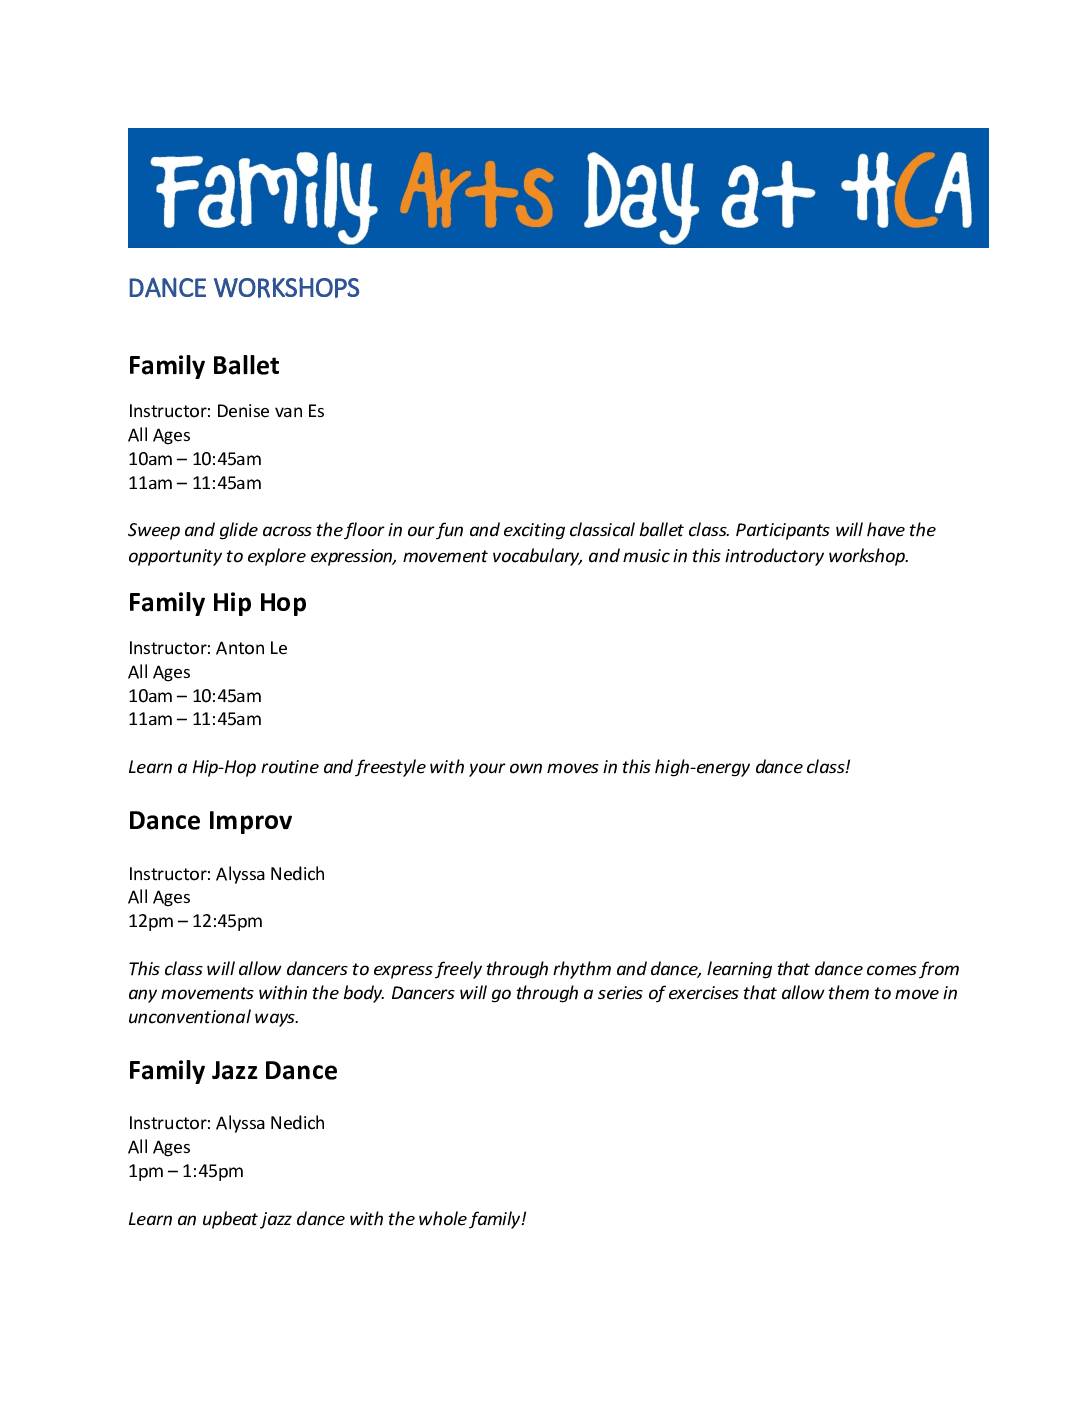 Family Day 2020 Workshop Descriptions